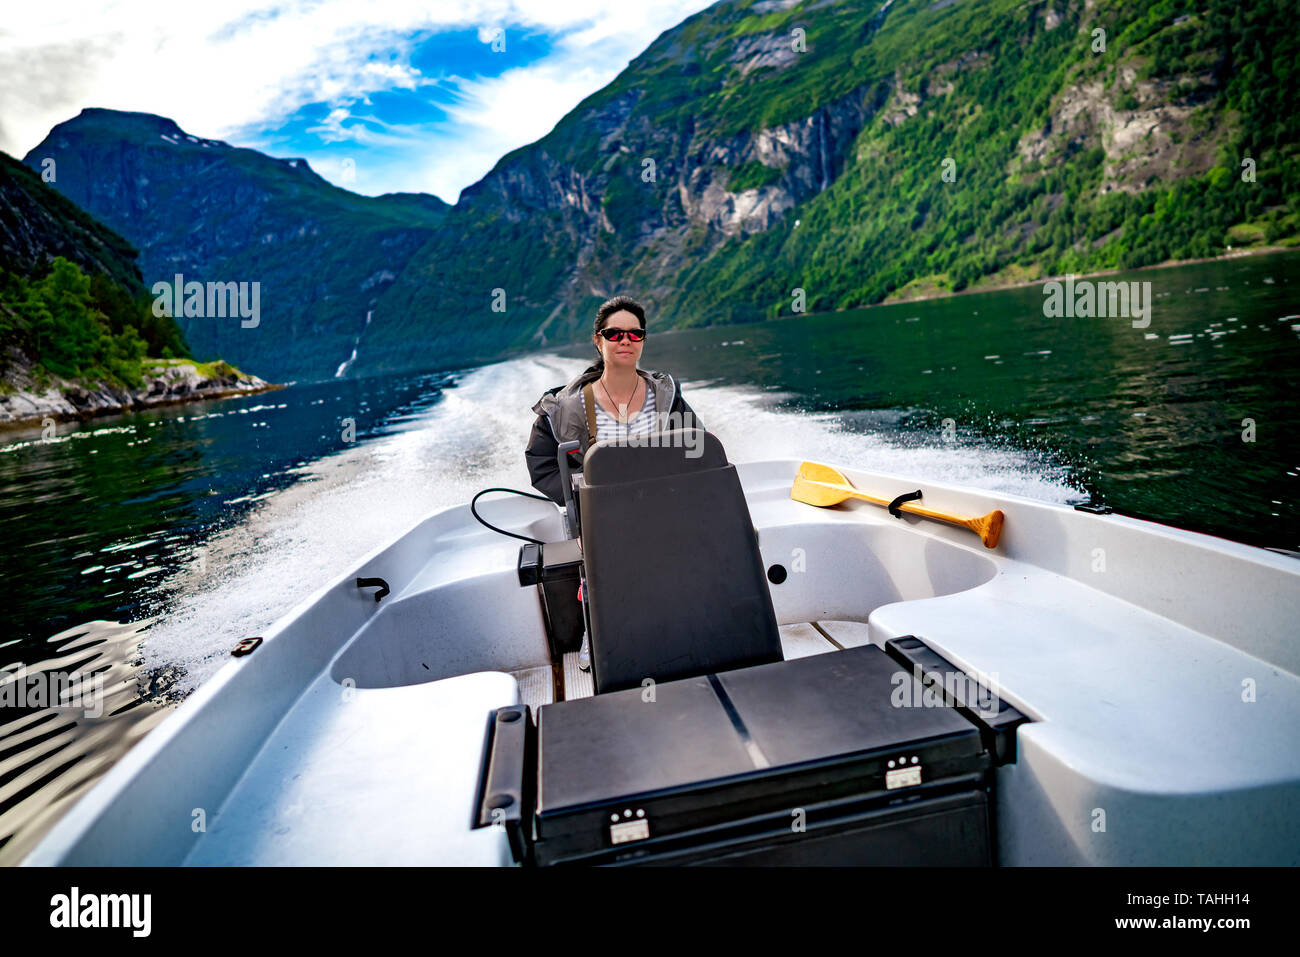 Femme au volant d'un bateau à moteur. Fjord de Geiranger, Belle Nature Norvège.vacances d'été. Fjord de Geiranger, Site du patrimoine mondial de l'UNESCO. Banque D'Images